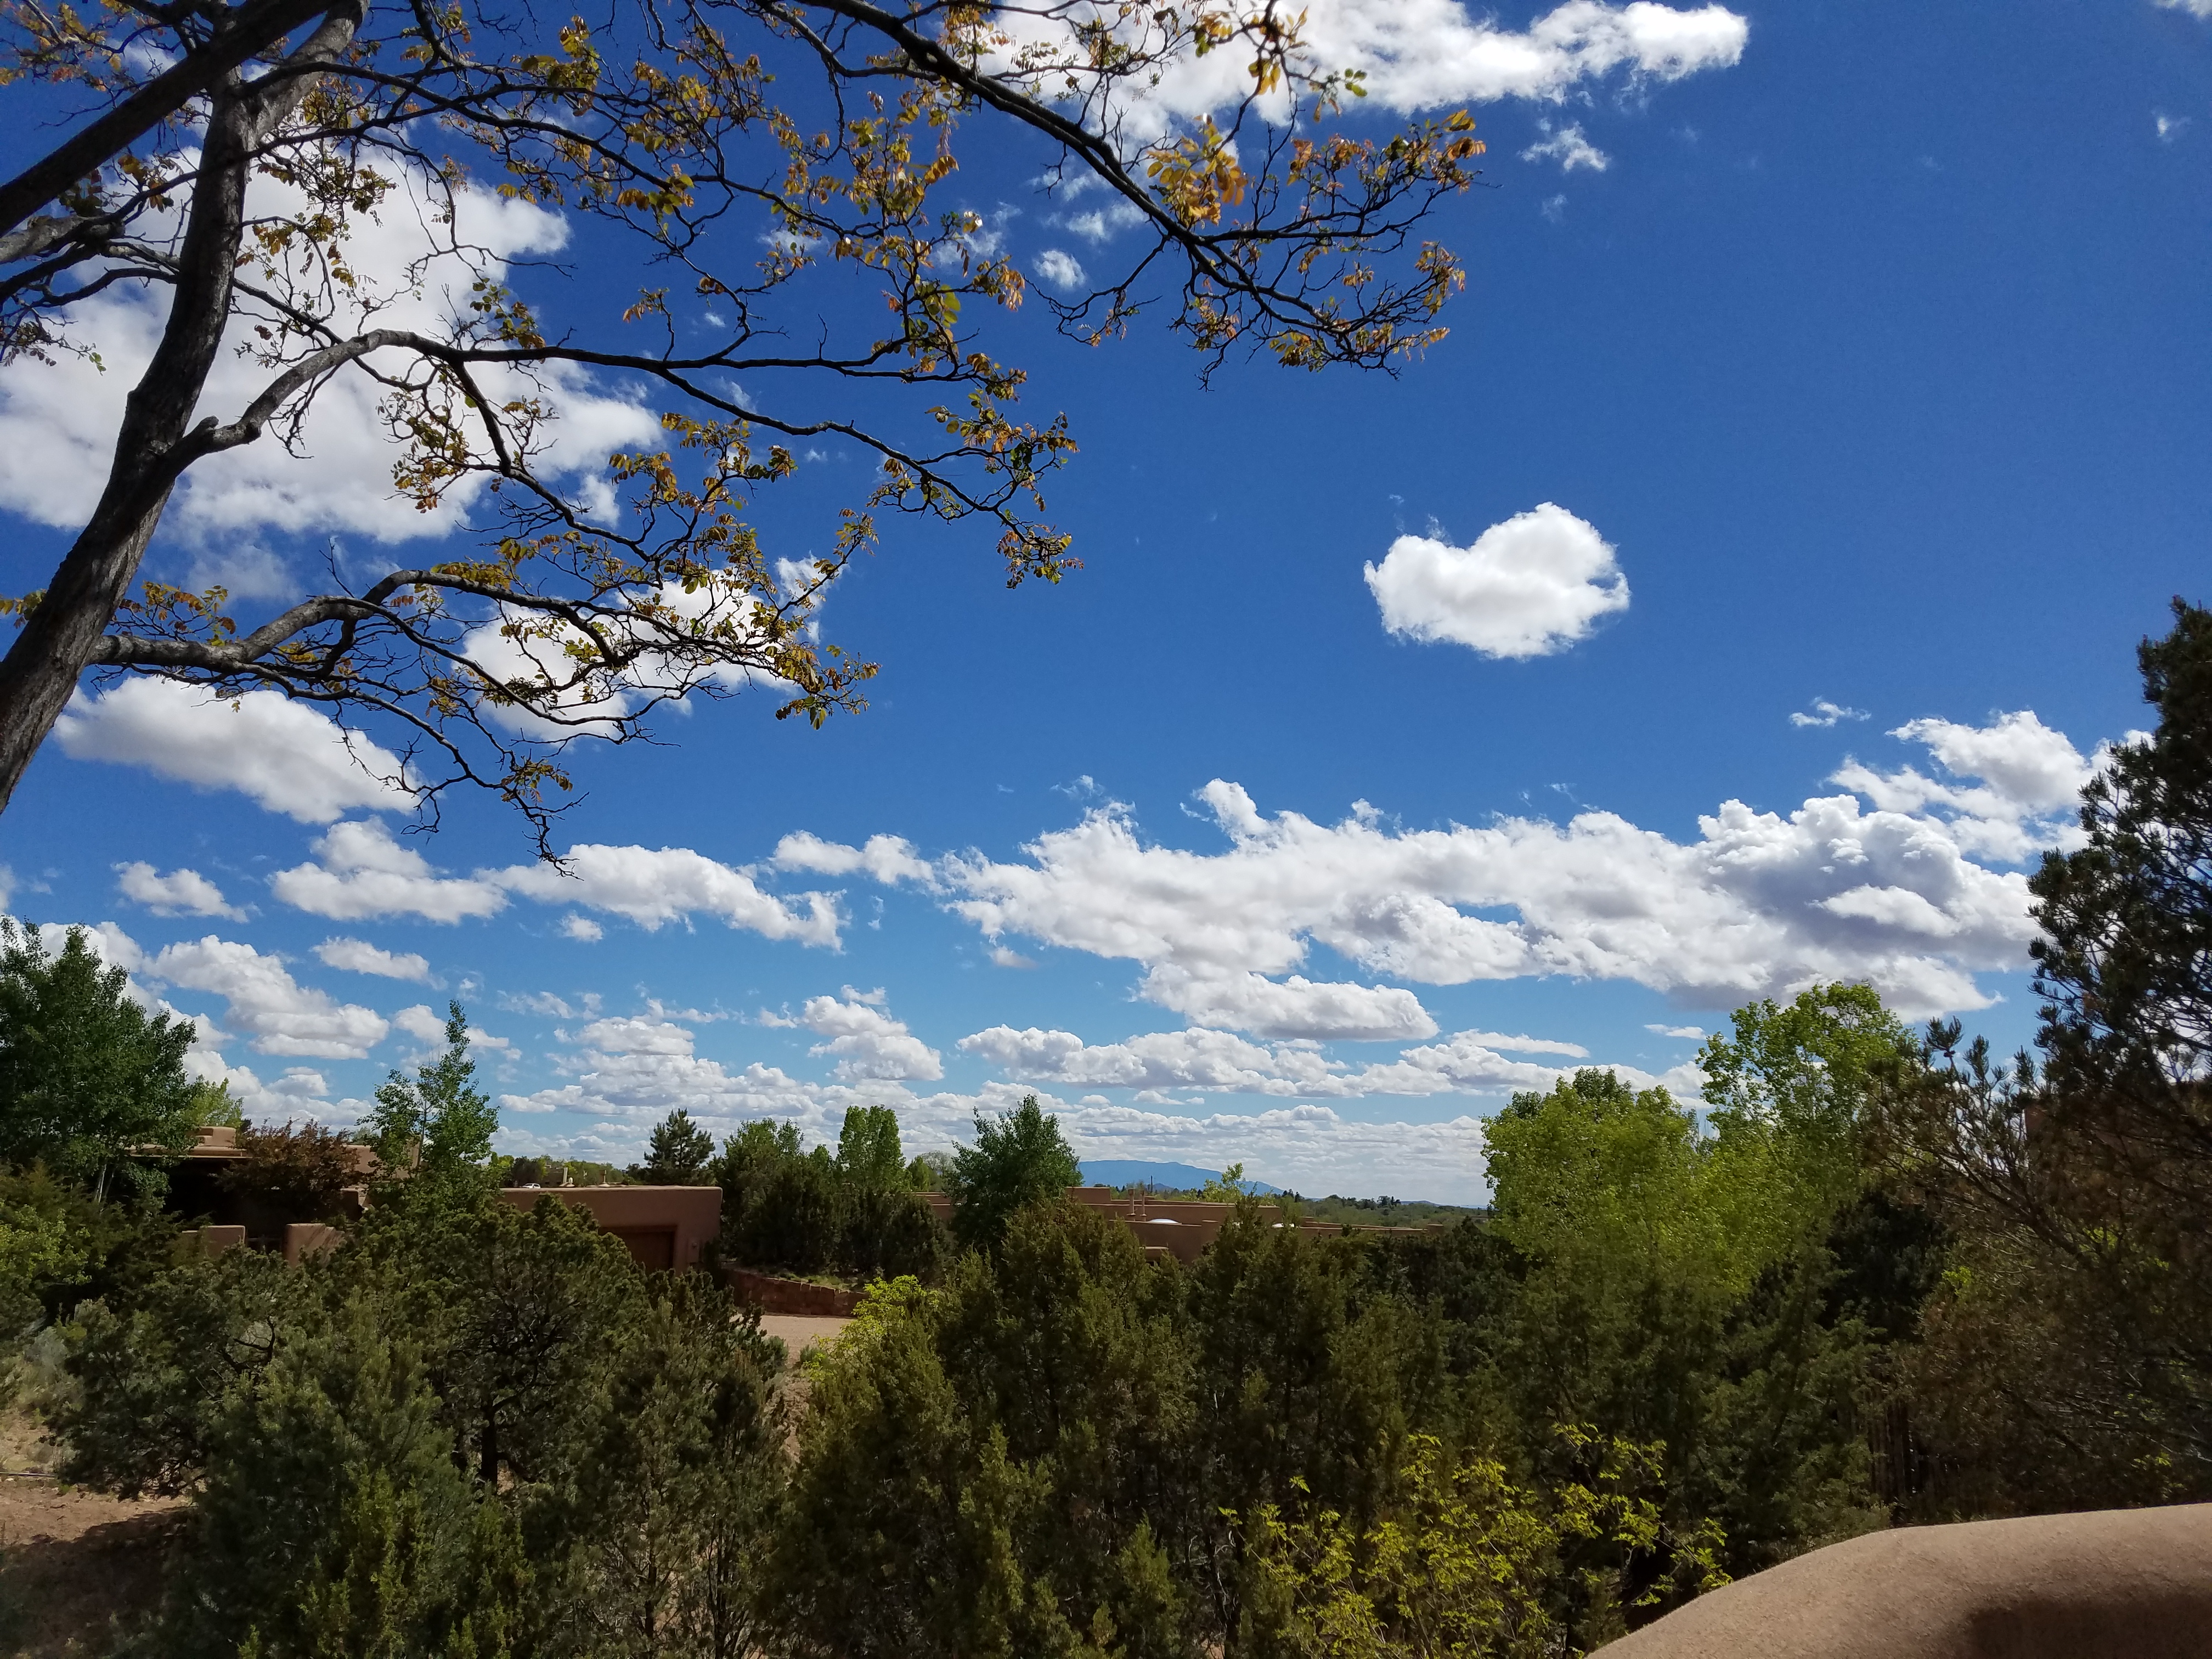 Pretty day in Santa Fe